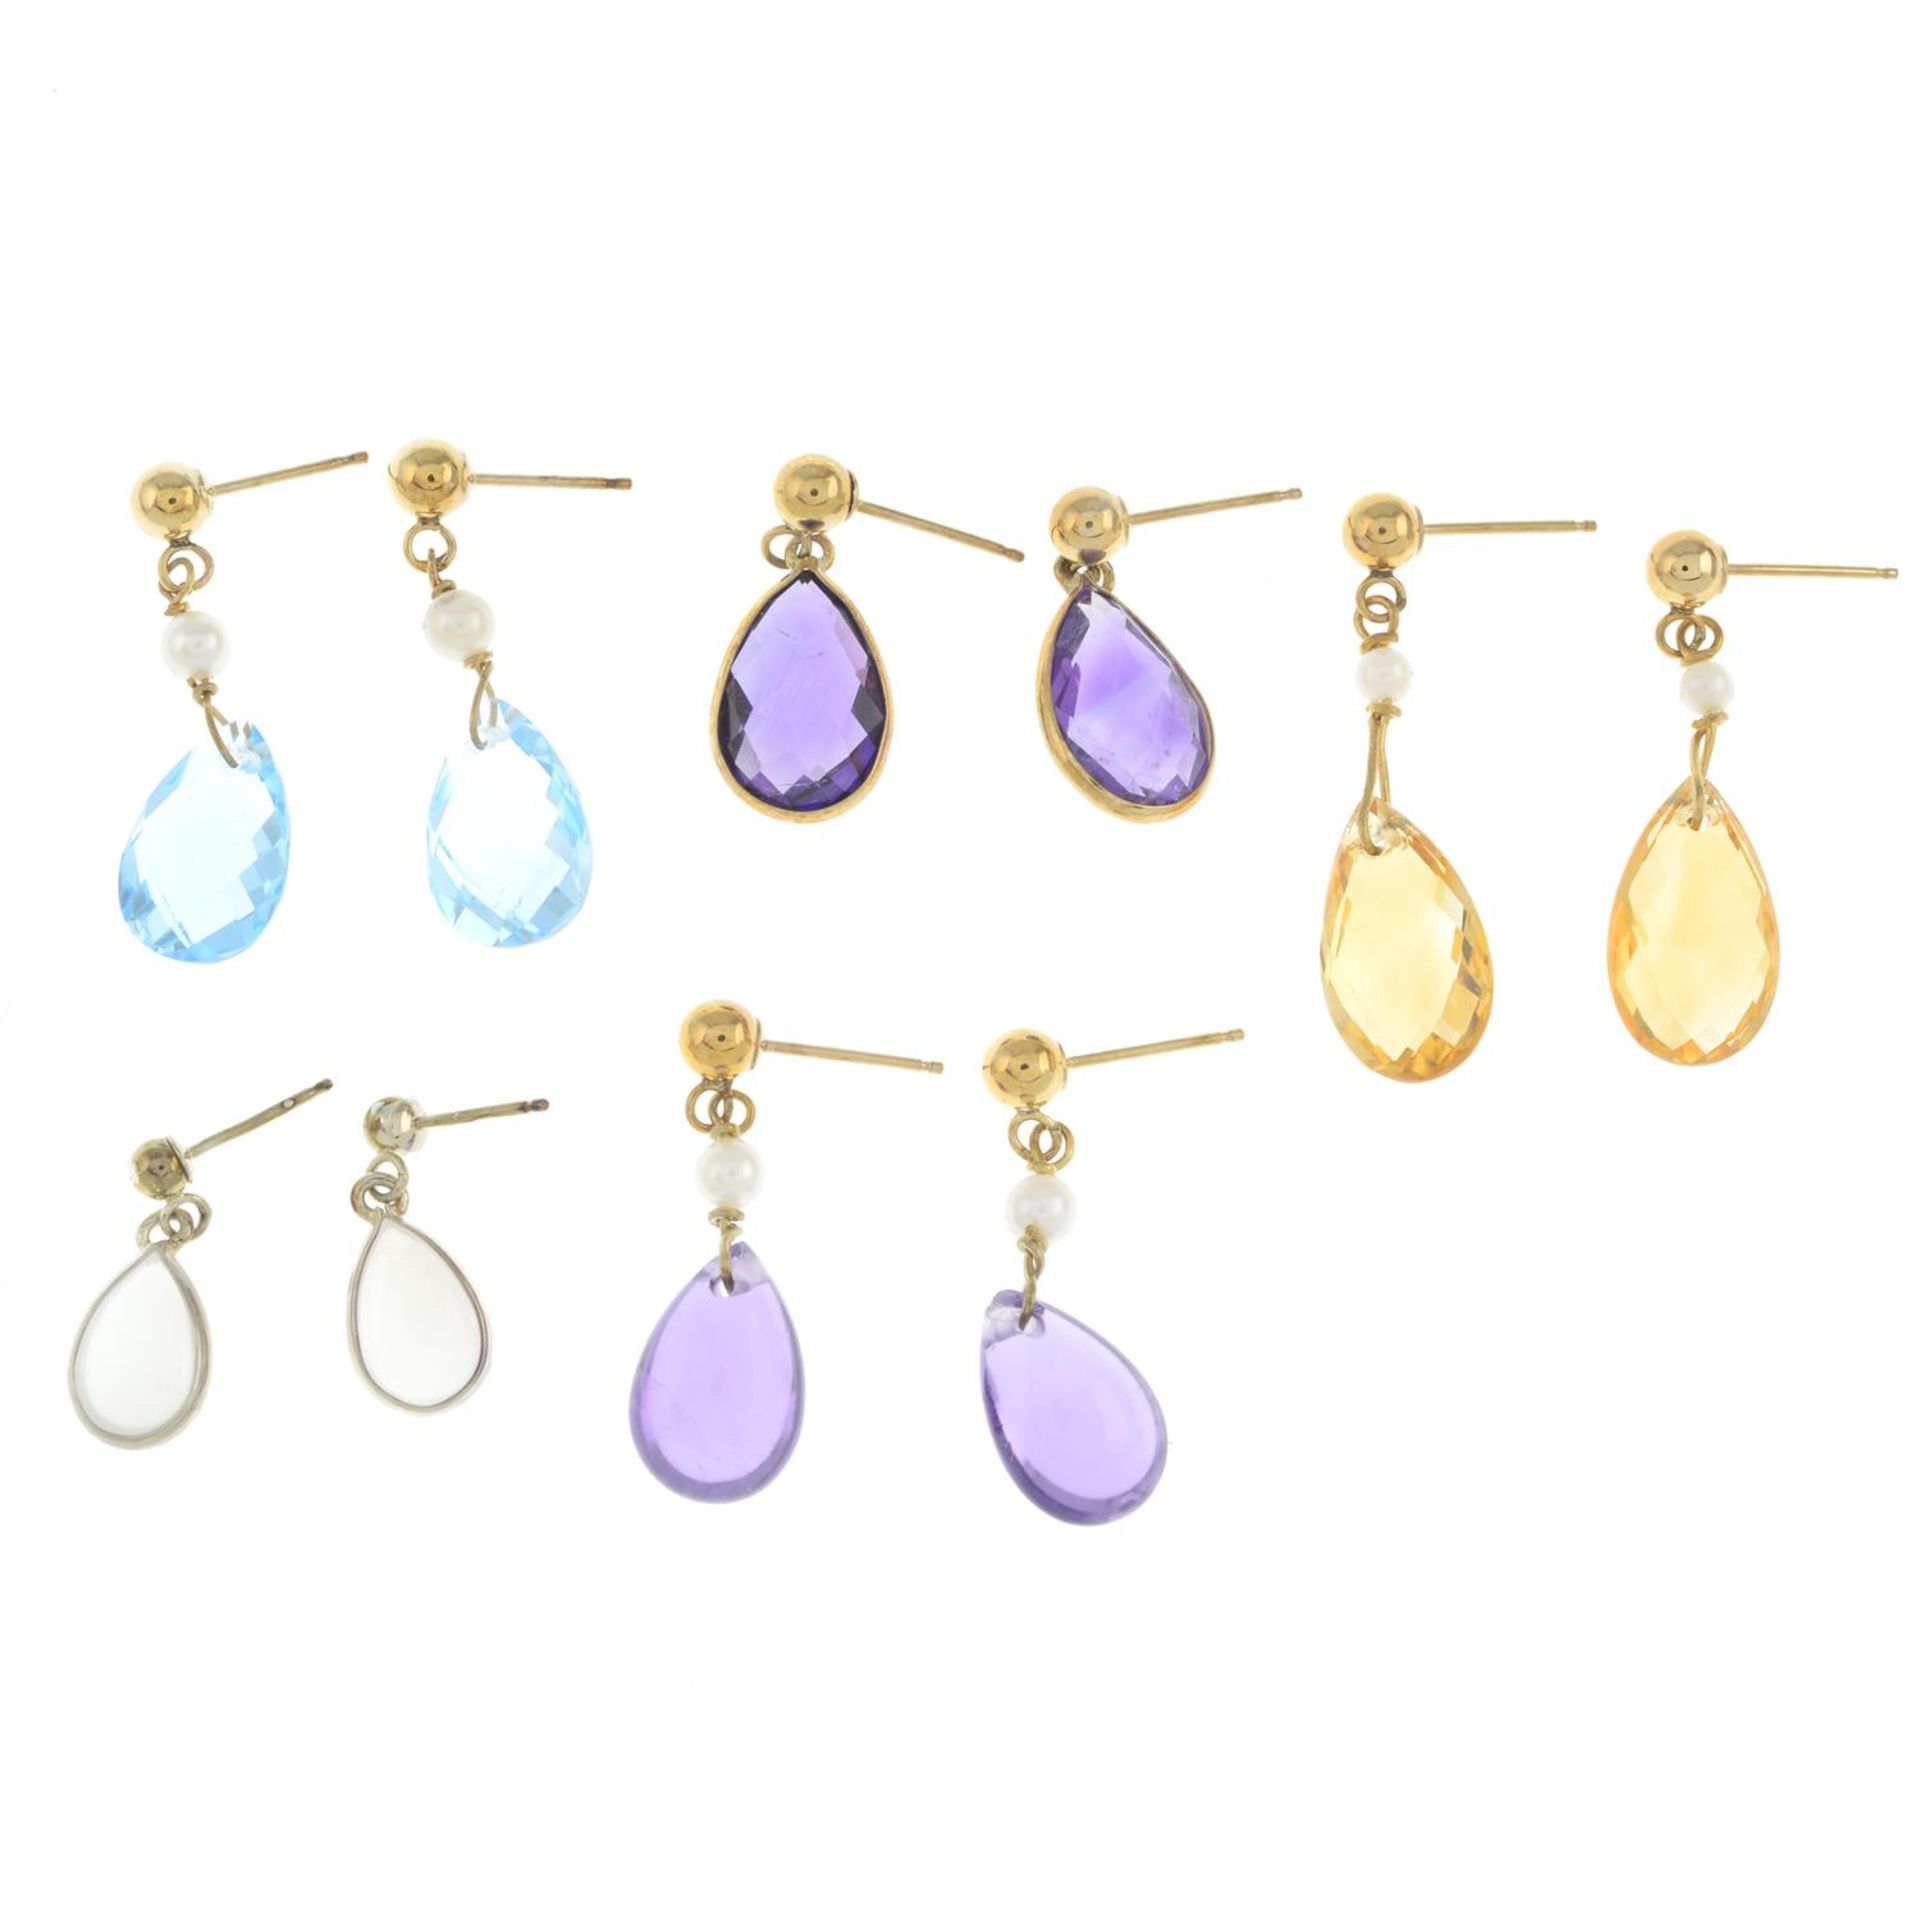 Five pairs of gem earrings - Image 2 of 2